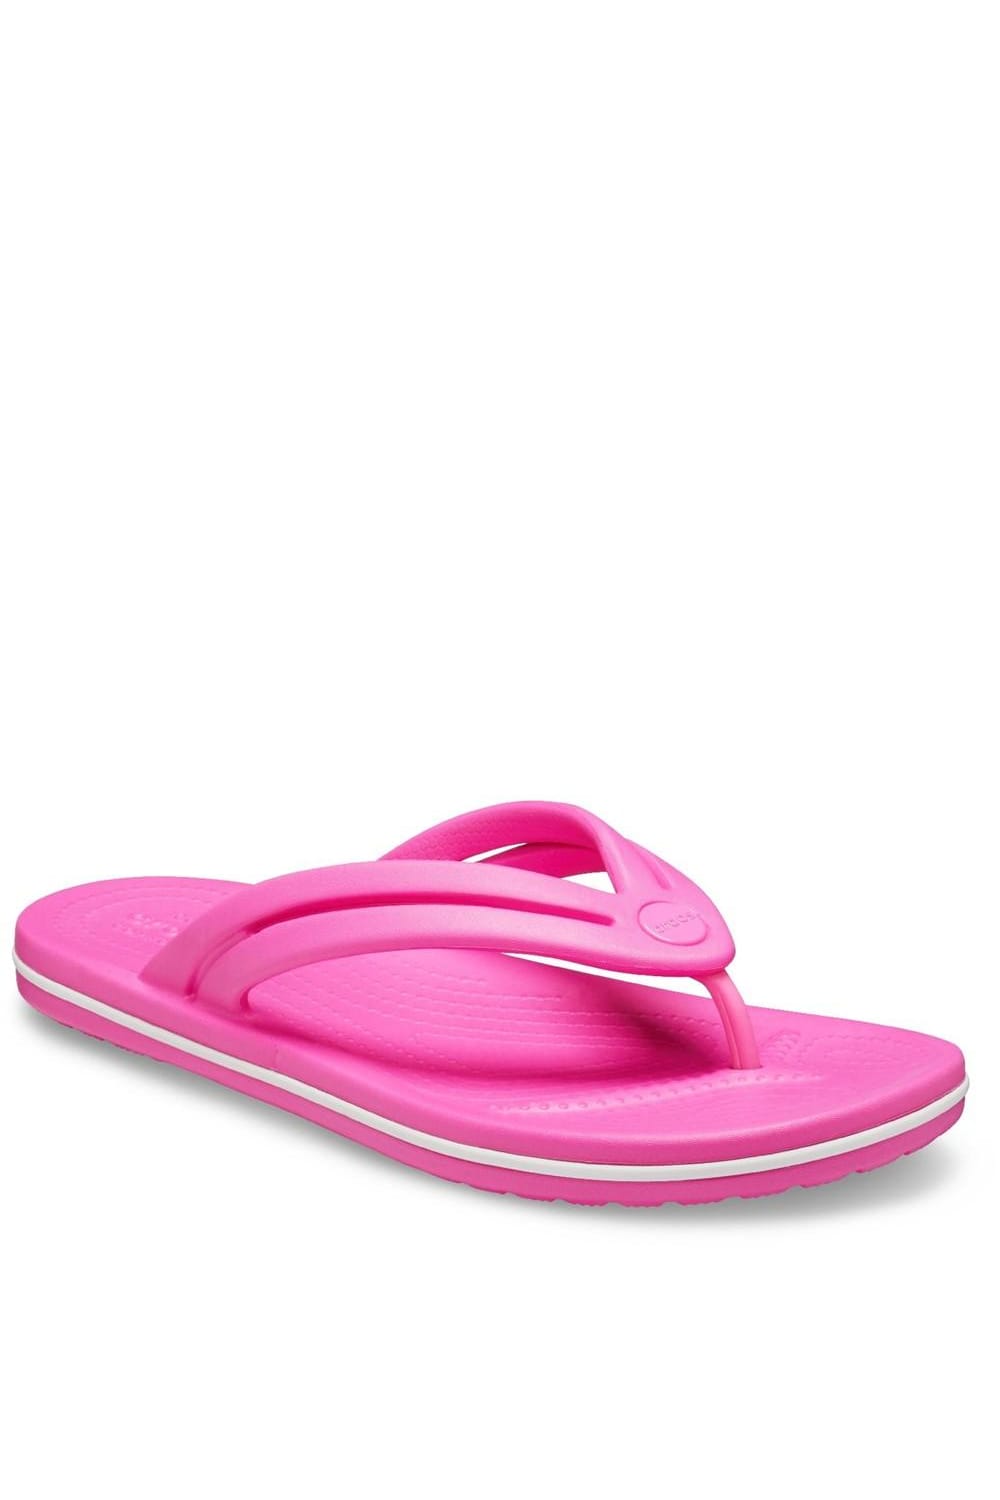 Womens/Ladies Crocband Flip Flops (Electric Pink)